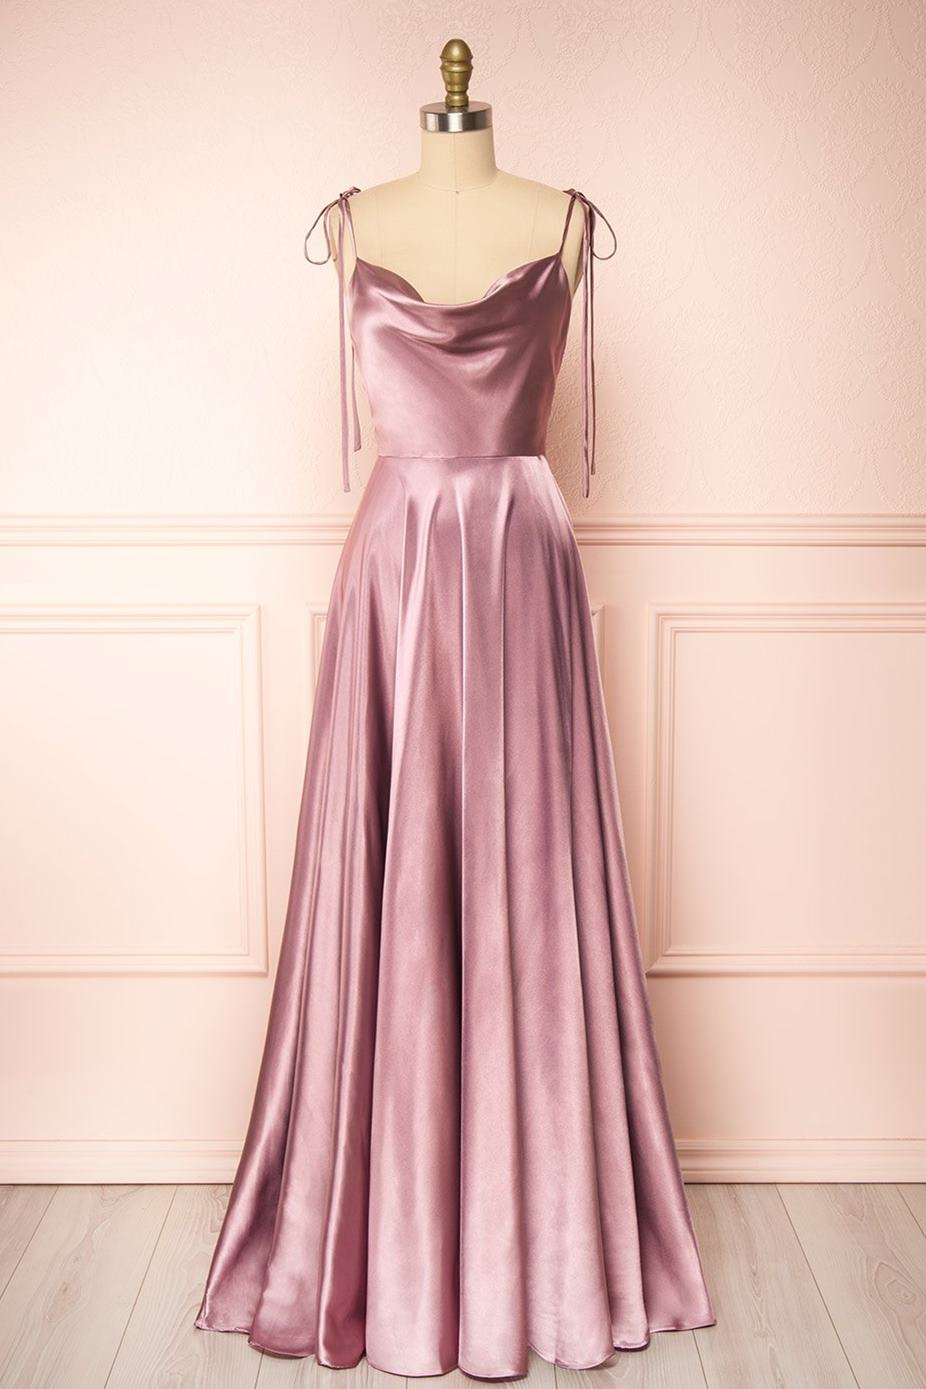 Oknass Simple Rose Satin Spaghetti Straps Sleeveless Prom Dress With Split Open Back